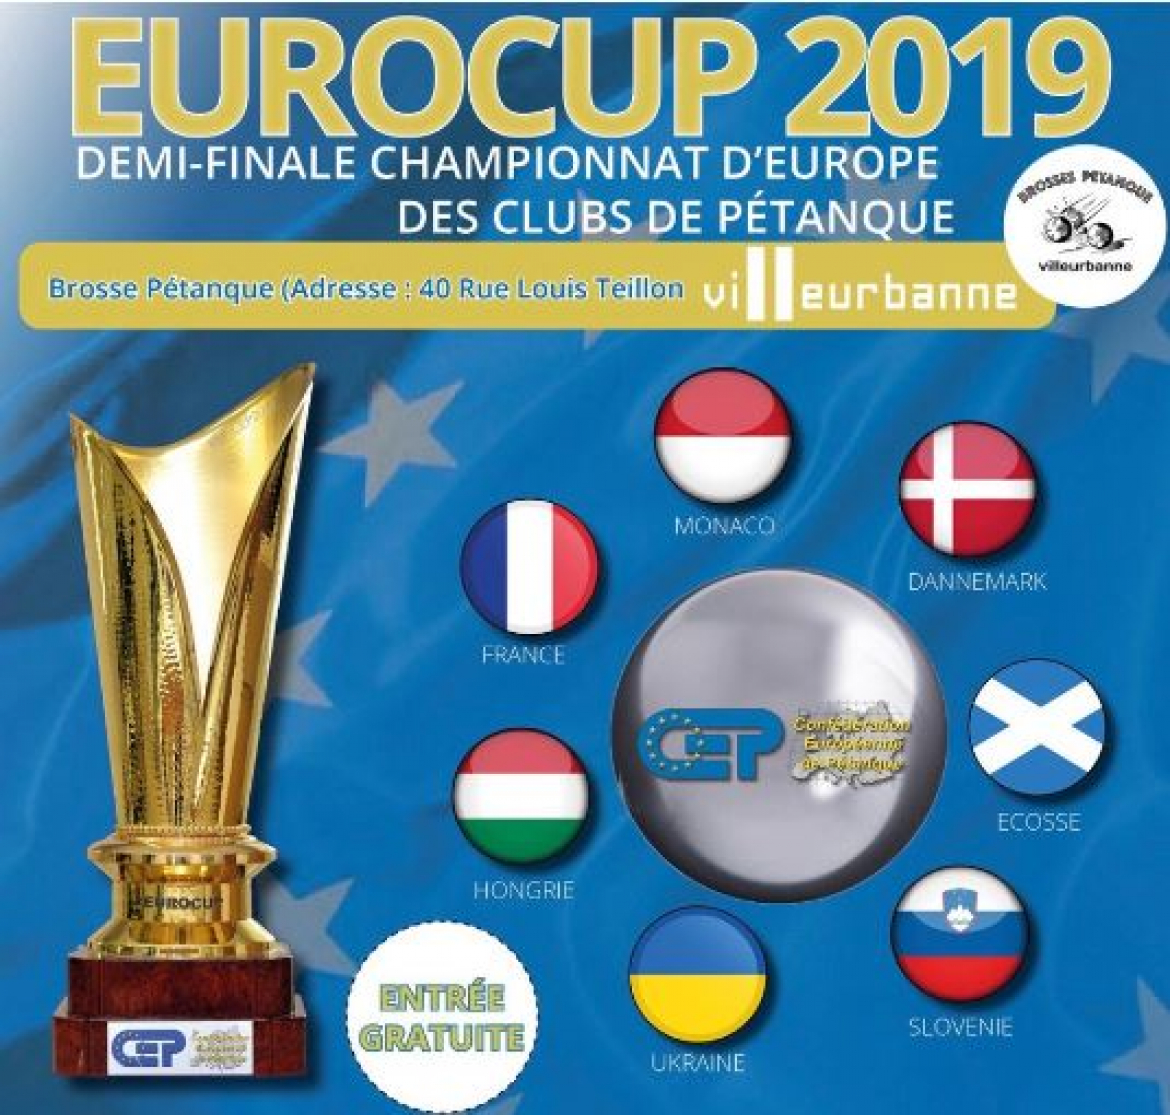 L’Eurocup 2019 de pétanque passera par Villeurbanne